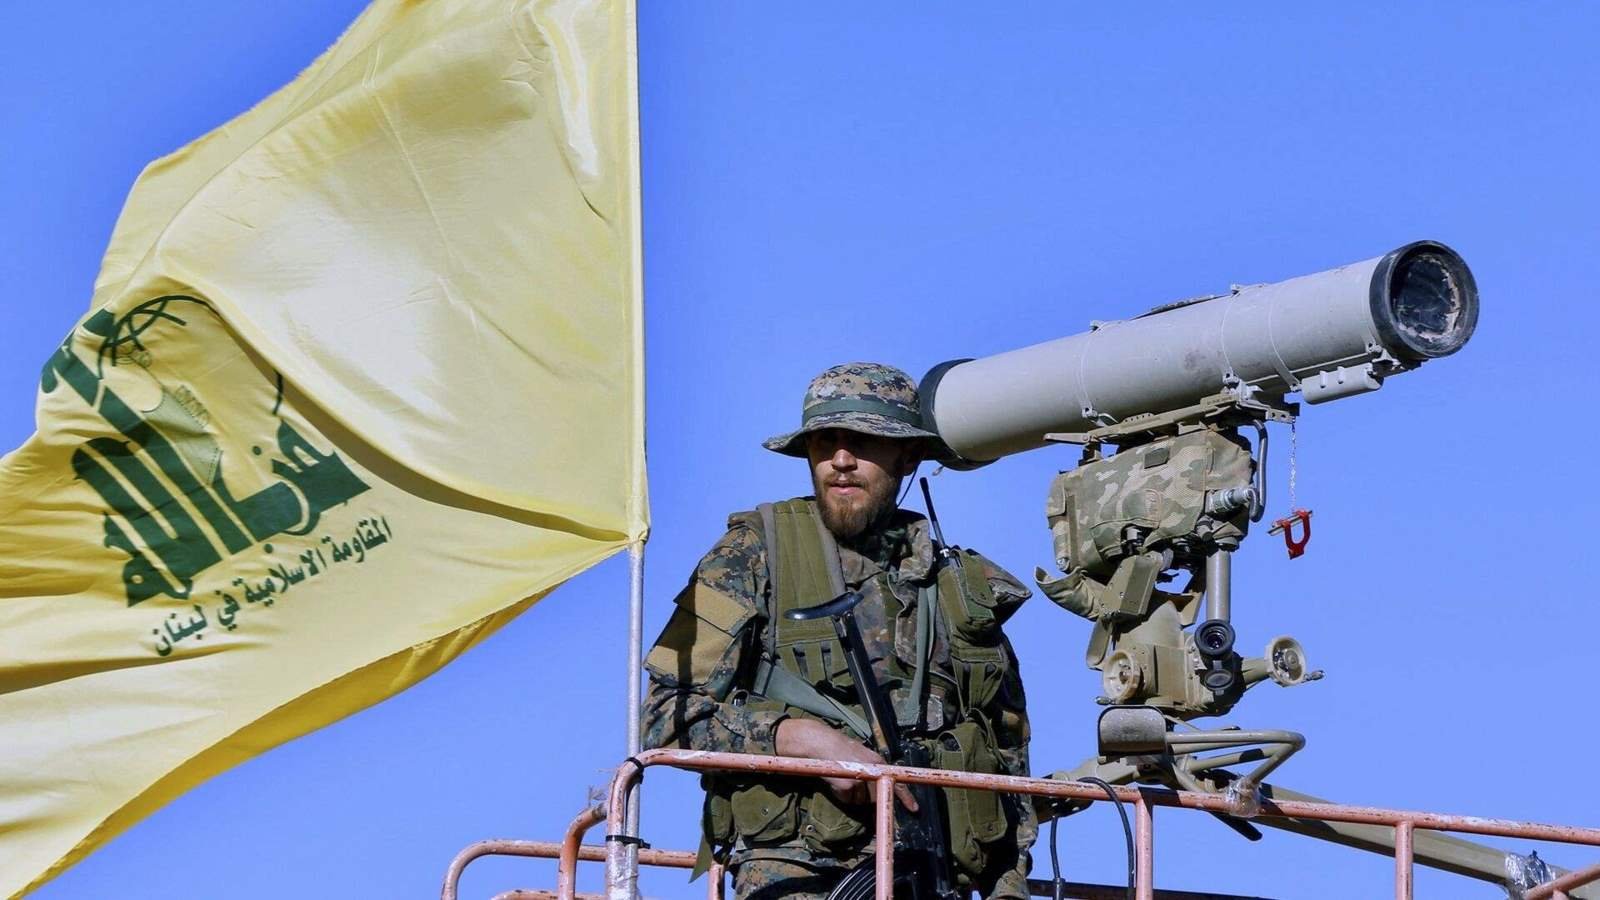 حزب الله: استهدفنا تجمعا لقوات الاحتلال بمستوطنة أفيفيم وموقع رويسات العلم في مزارع شبعا